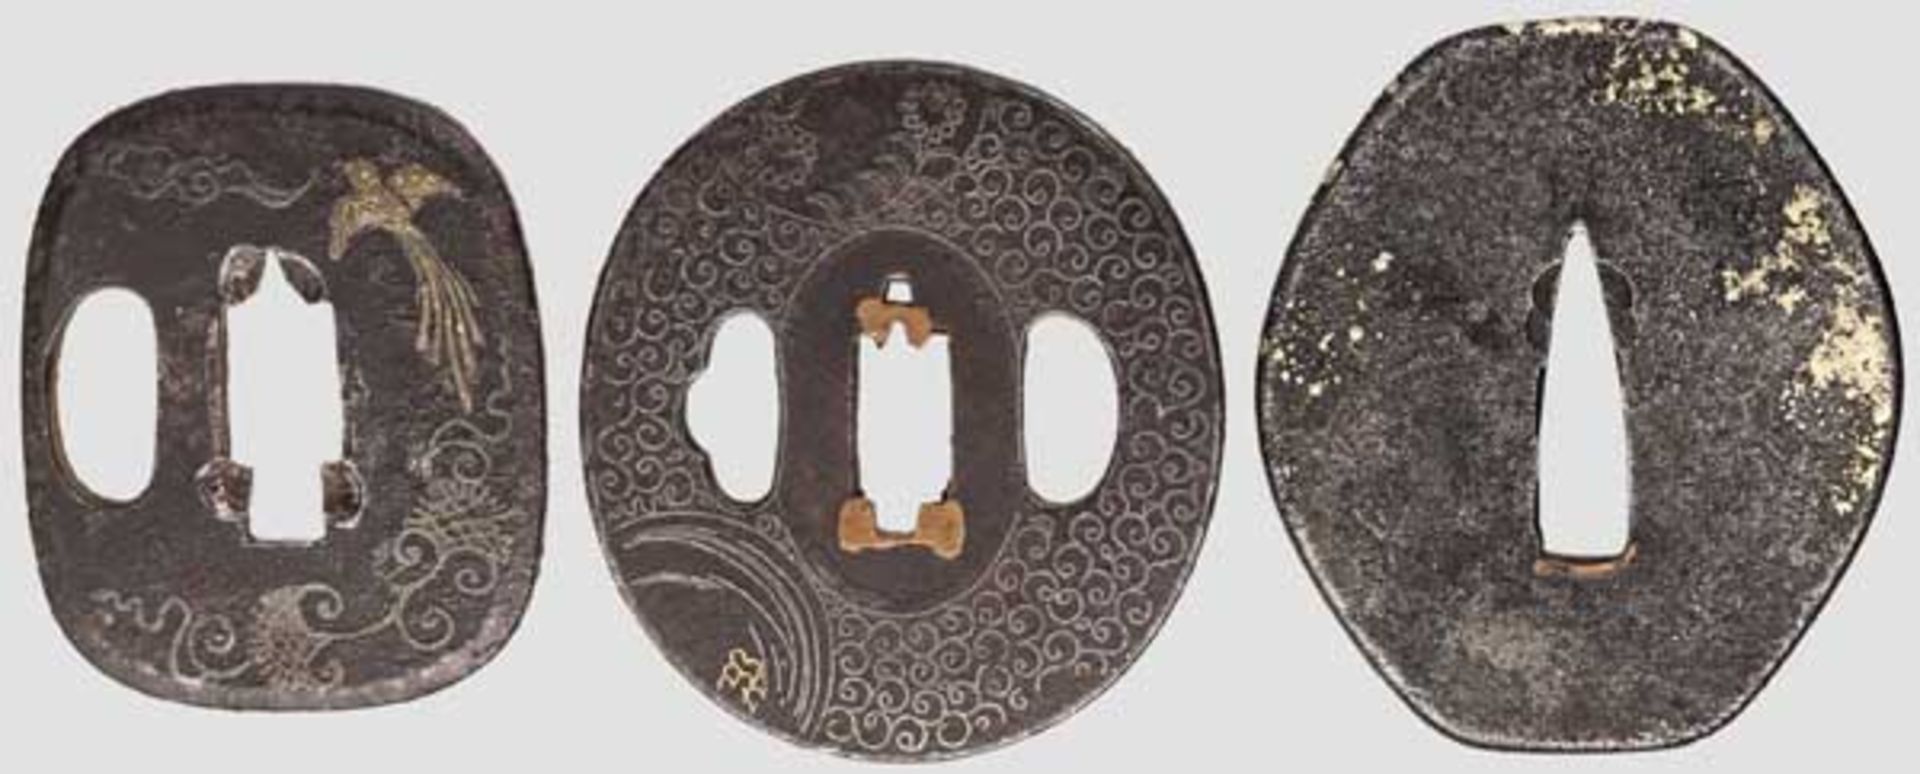 Drei Tsubas, Japan um 1750 Hijigata-Eisentsuba mit Messingdekor auf glatter, etwas korrodierter - Bild 2 aus 2